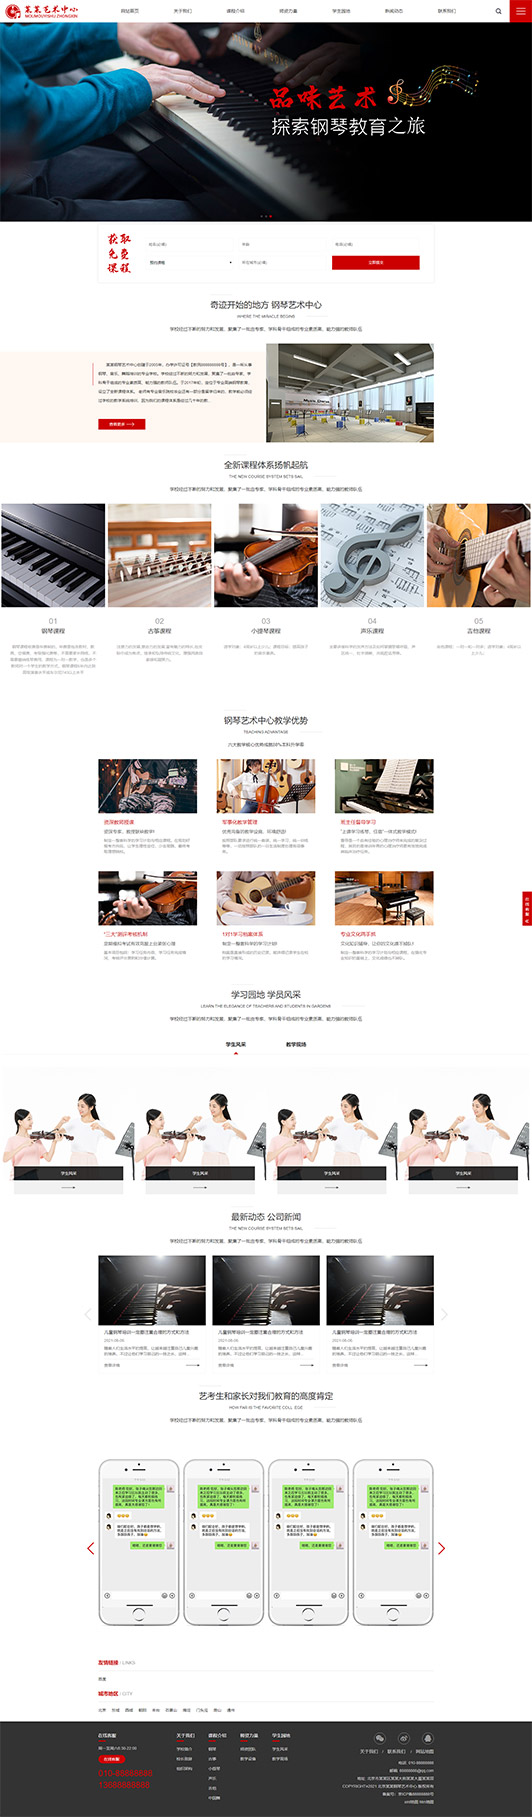 阜新钢琴艺术培训公司响应式企业网站